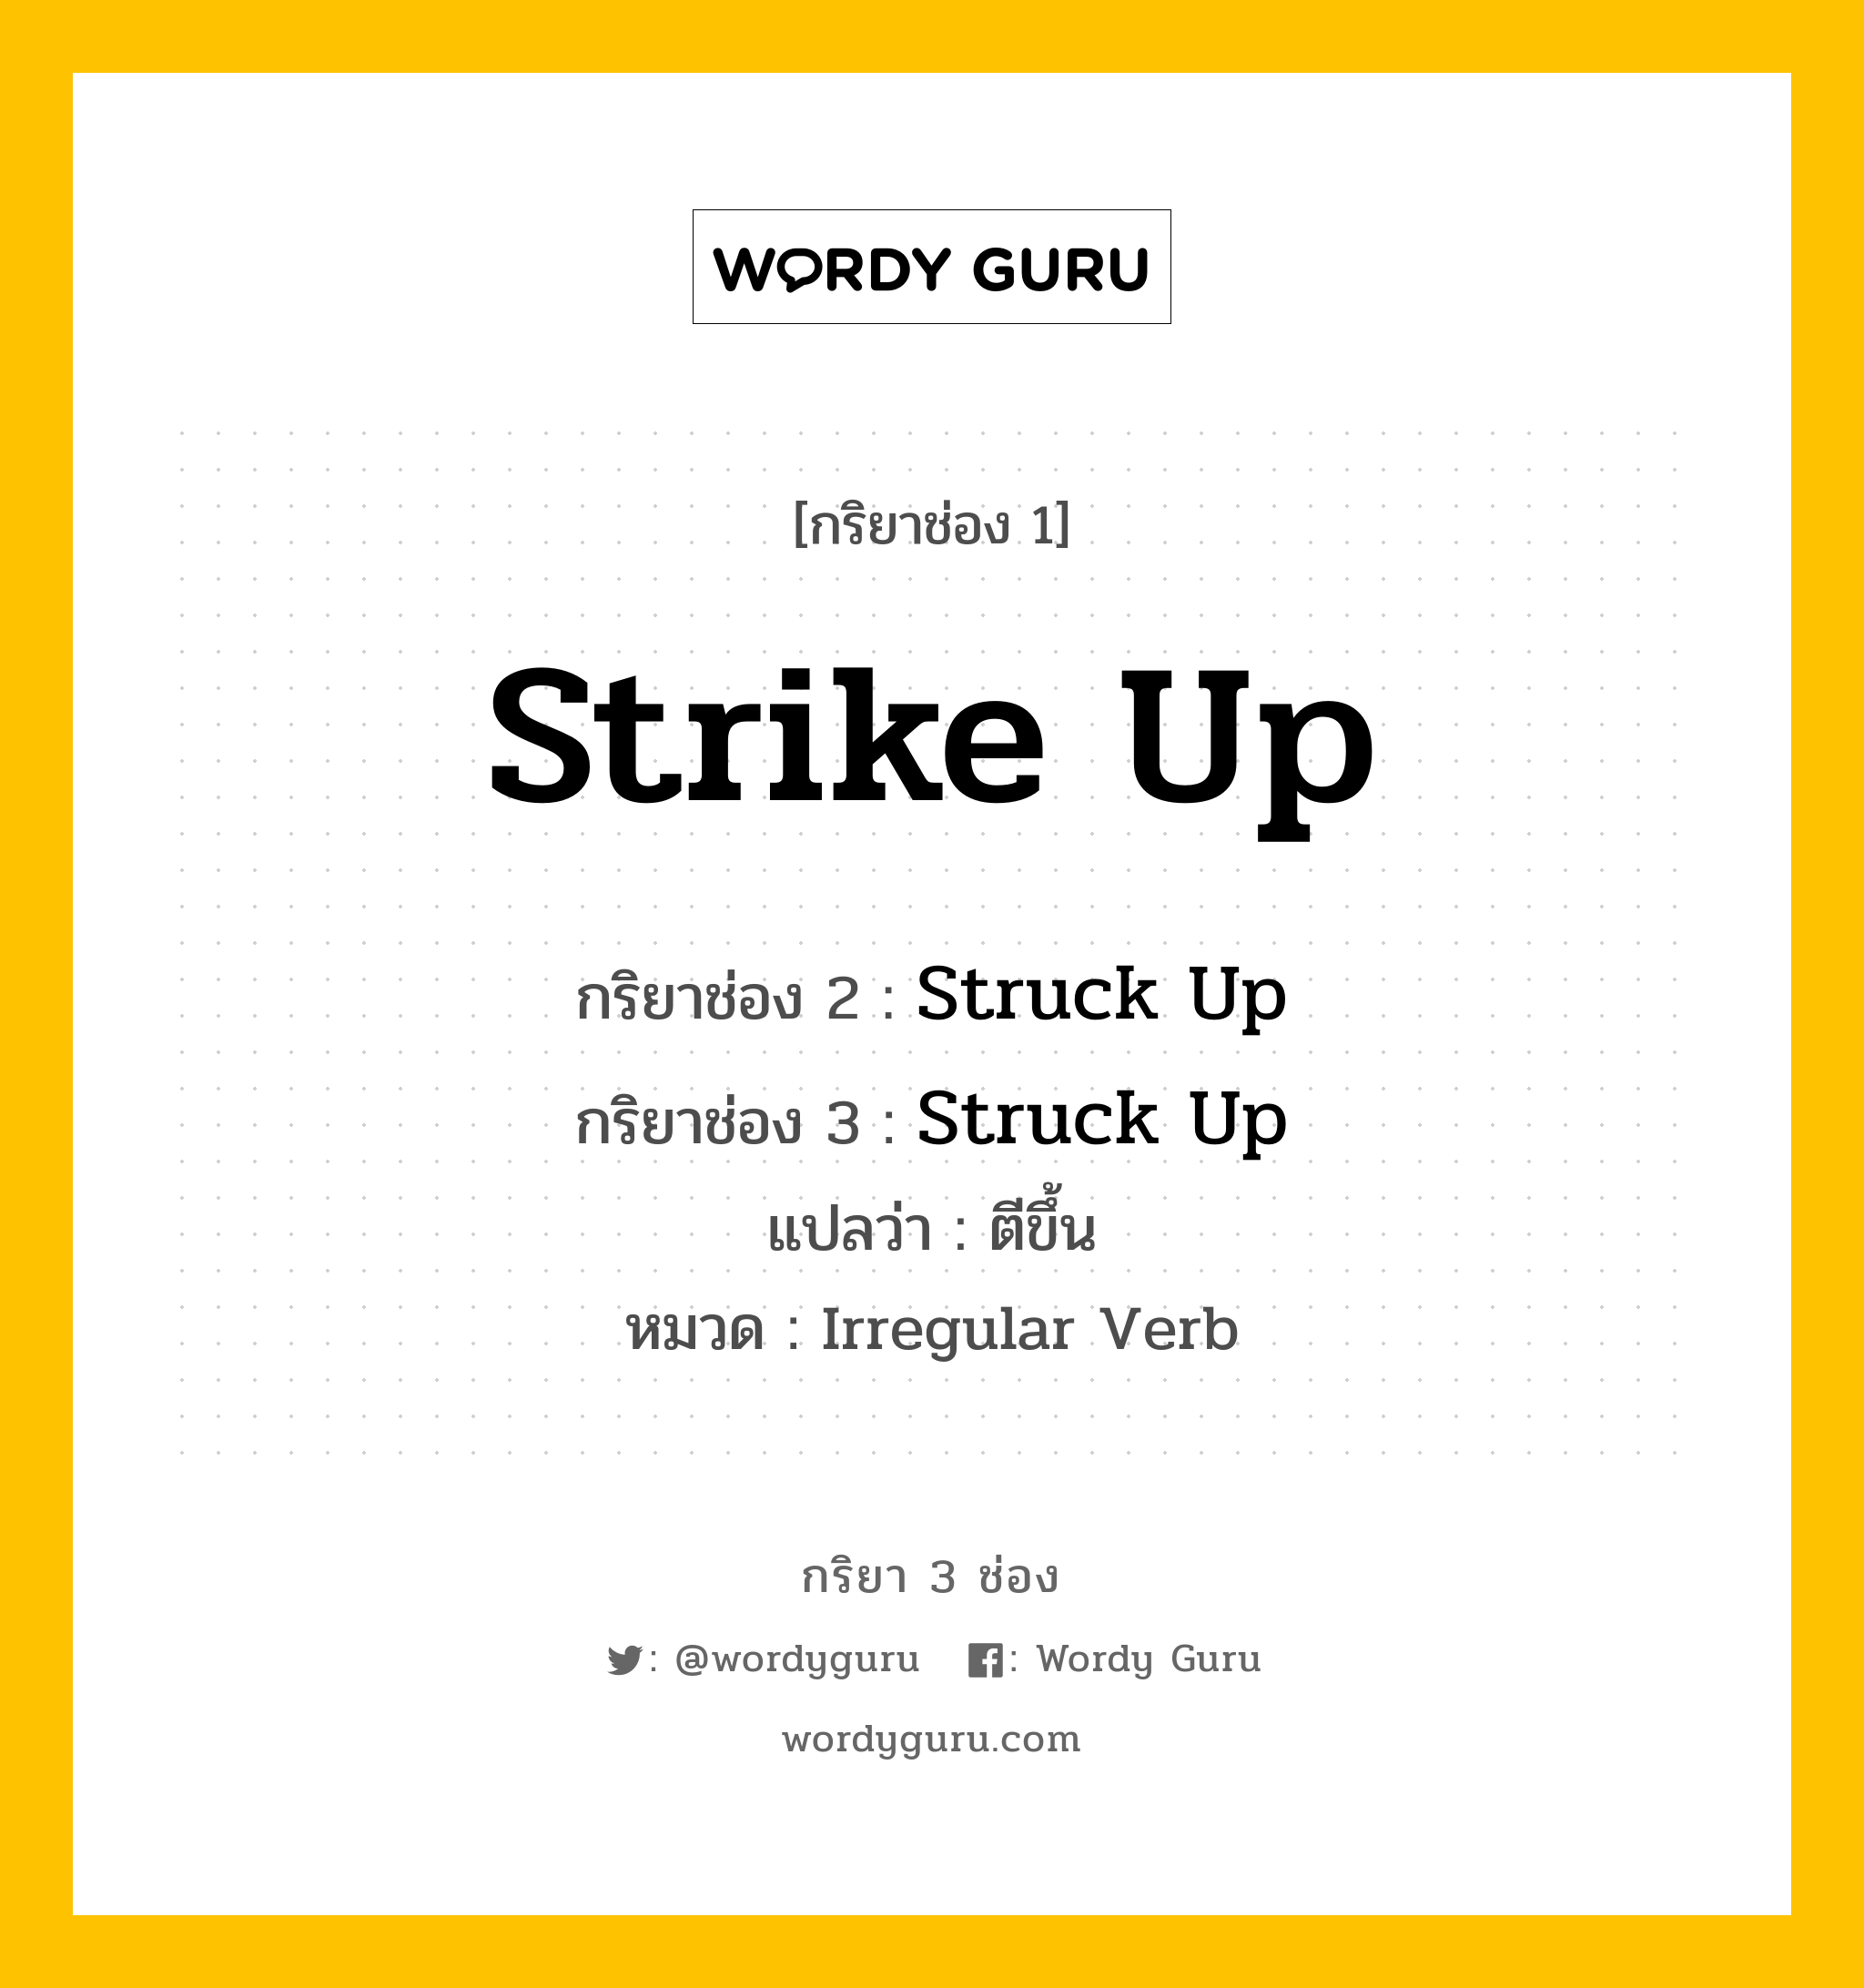 กริยา 3 ช่อง: Strike Up ช่อง 2 Strike Up ช่อง 3 คืออะไร, กริยาช่อง 1 Strike Up กริยาช่อง 2 Struck Up กริยาช่อง 3 Struck Up แปลว่า ตีขึ้น หมวด Irregular Verb หมวด Irregular Verb